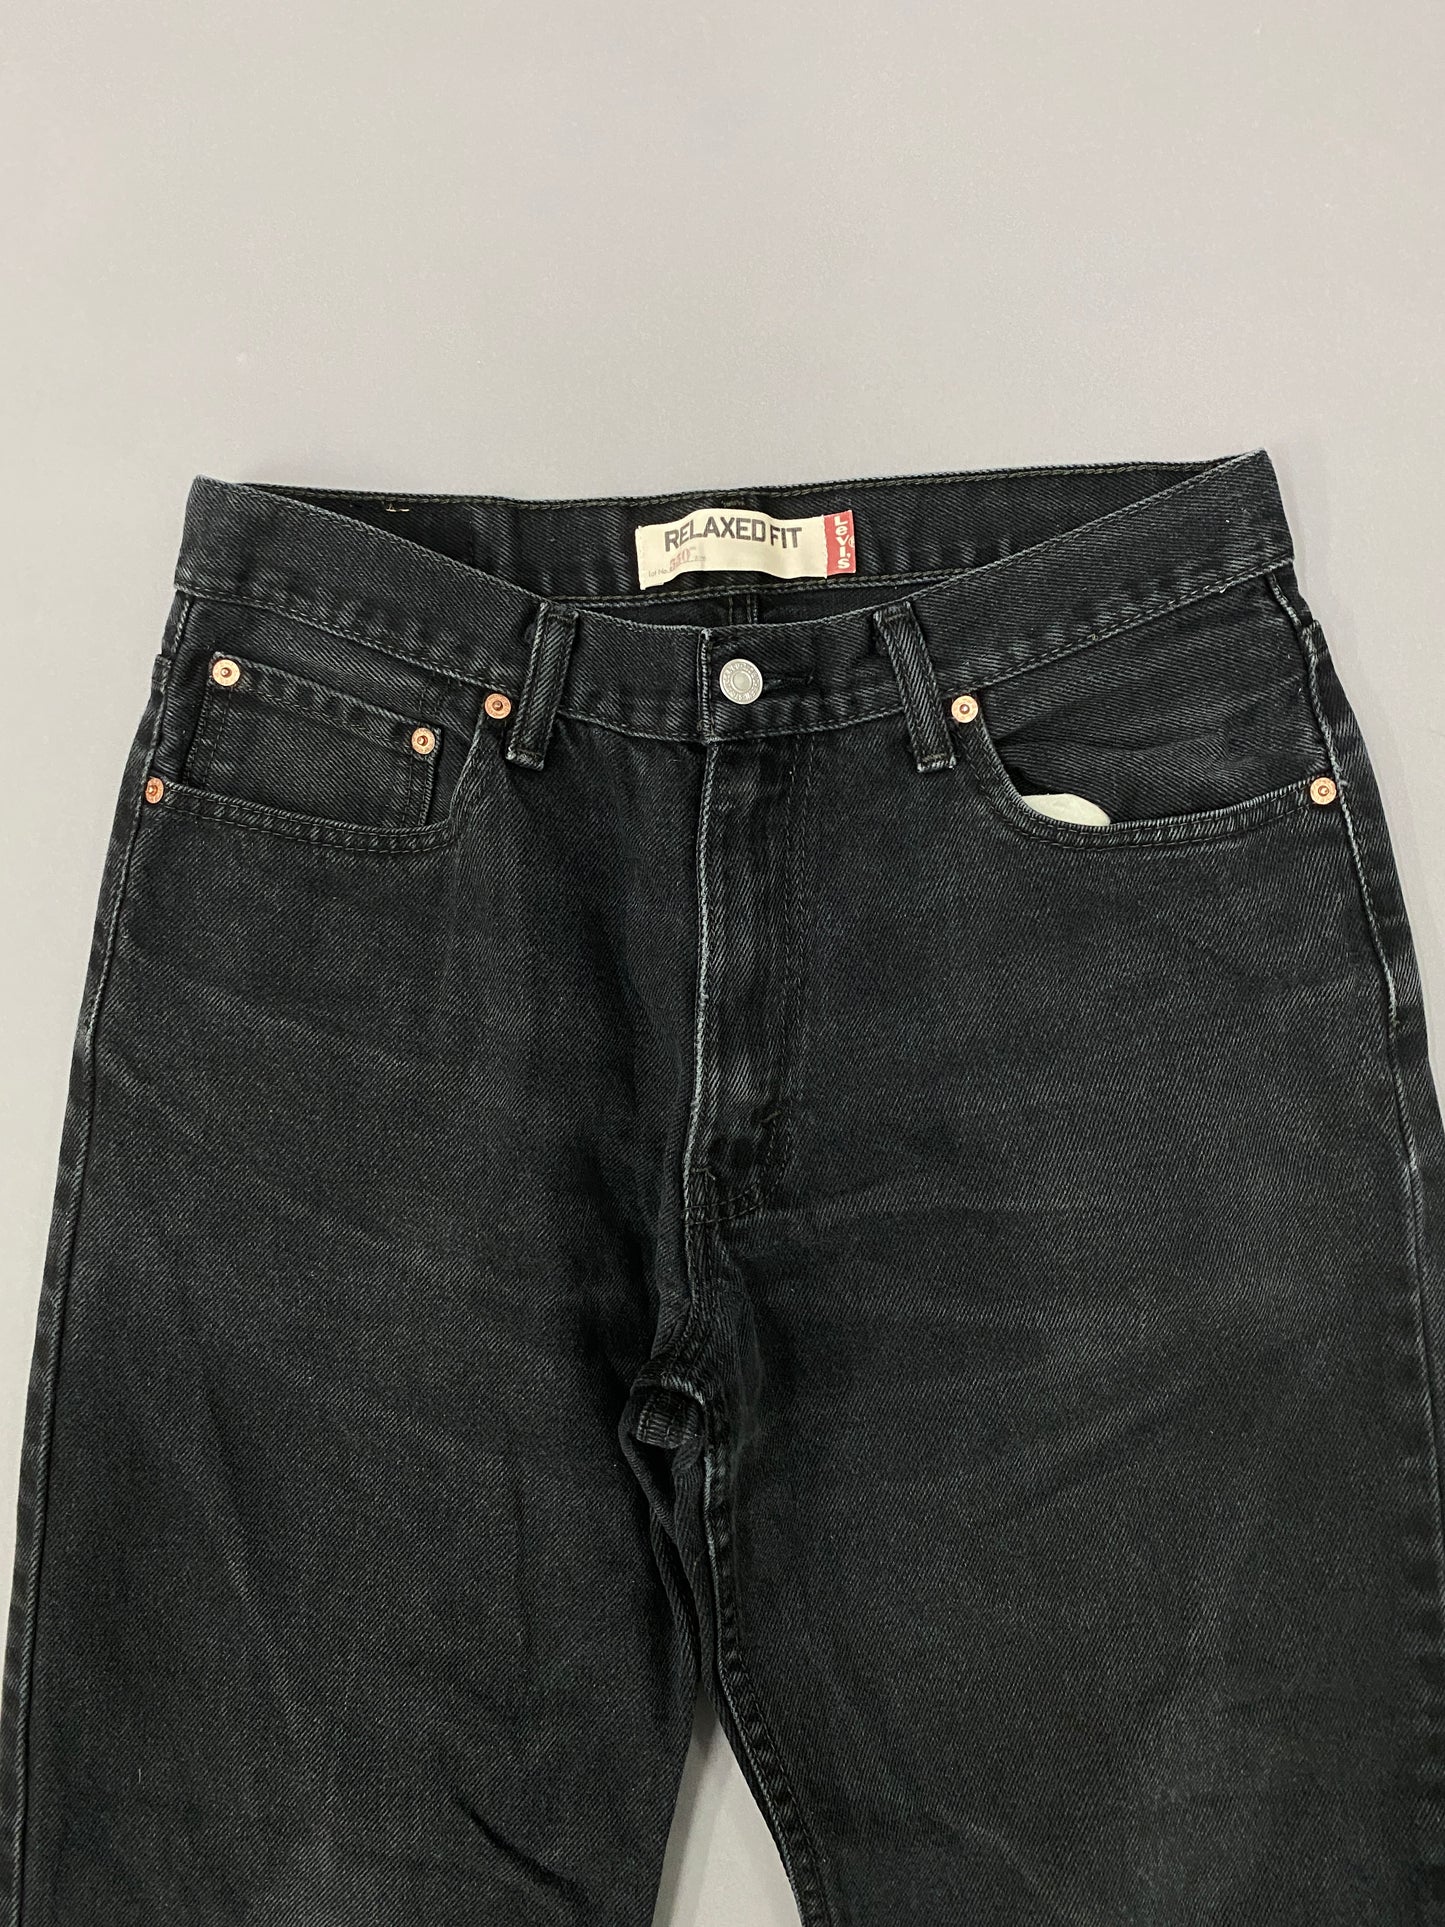 Jeans Levis 550 - 34 x 29